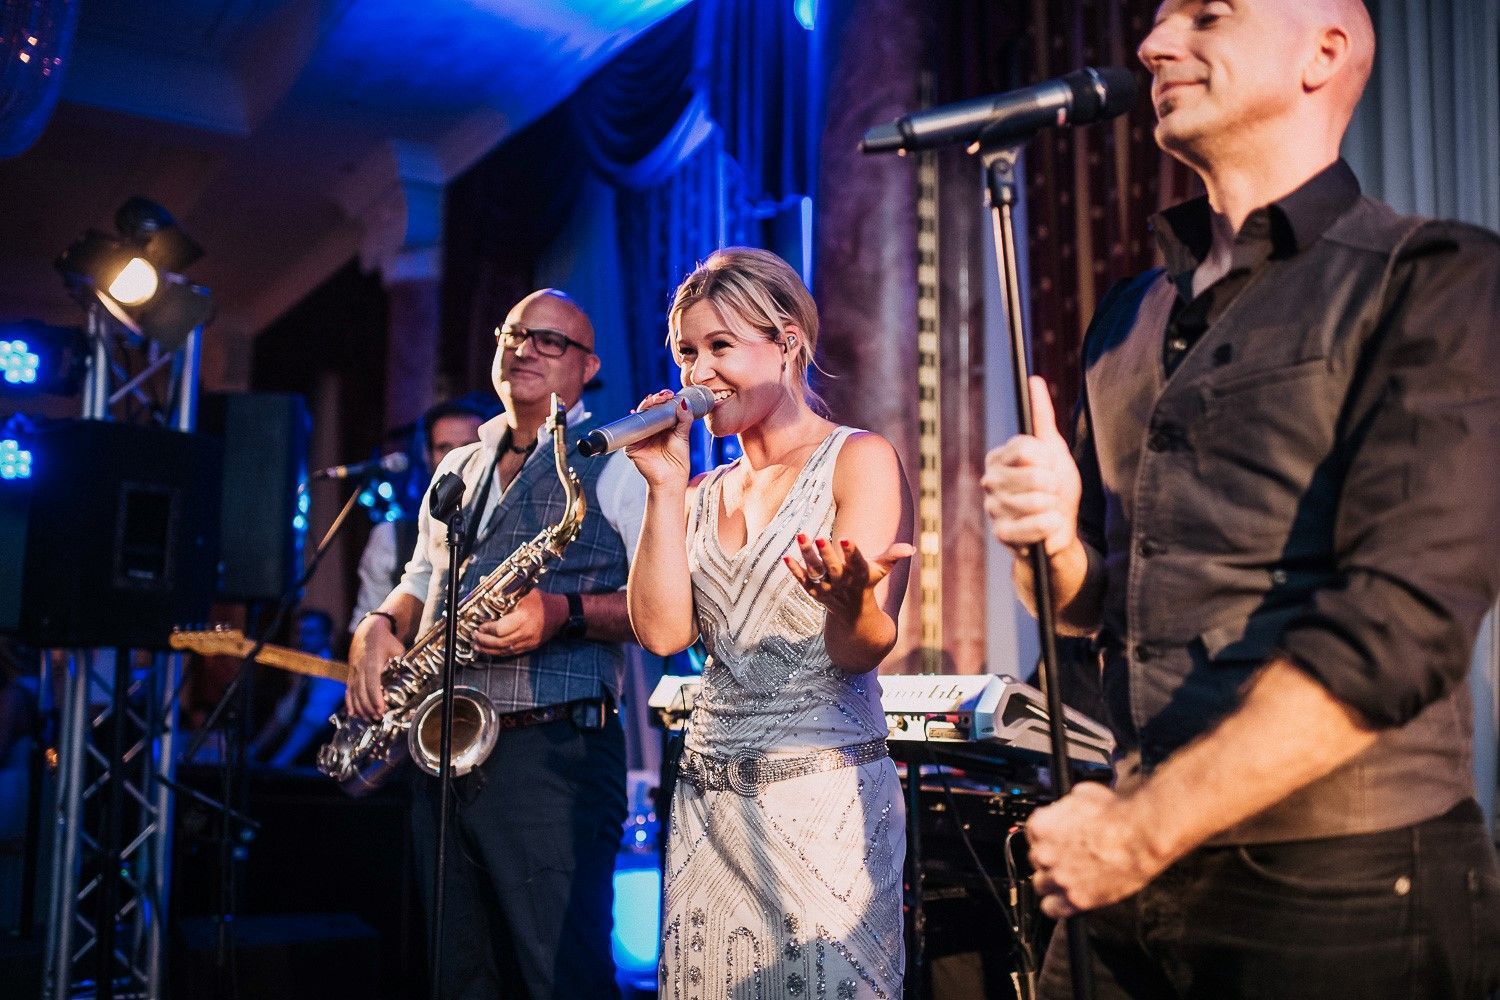 Bandleaderin Annekatrin Schmid steht in der Mitte der Bühne gemeinsam mit einem Saxophonisten und einem weiteren Sänger.